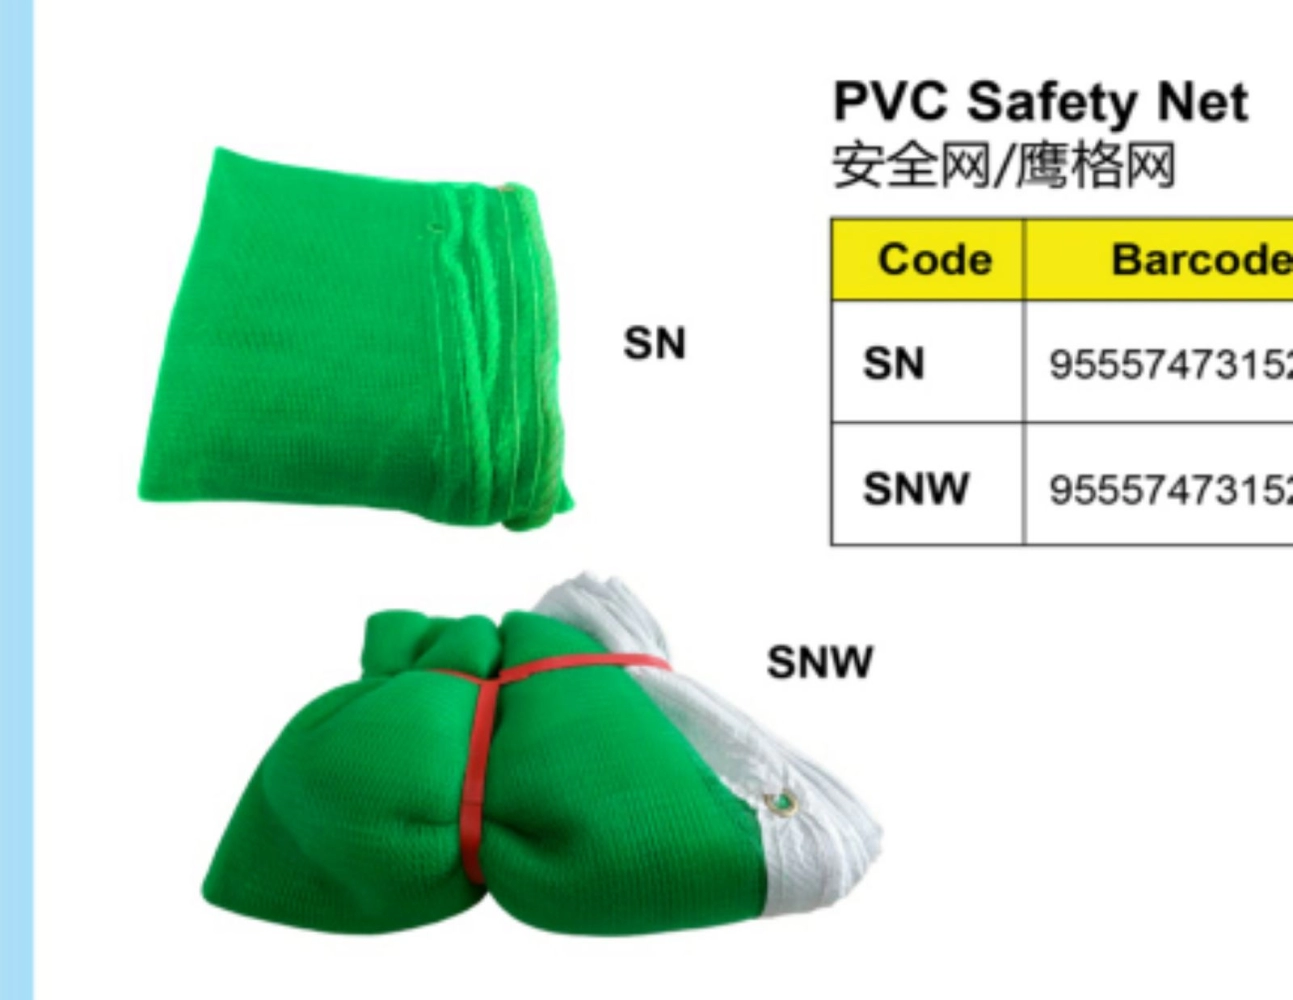 PVC safety netting